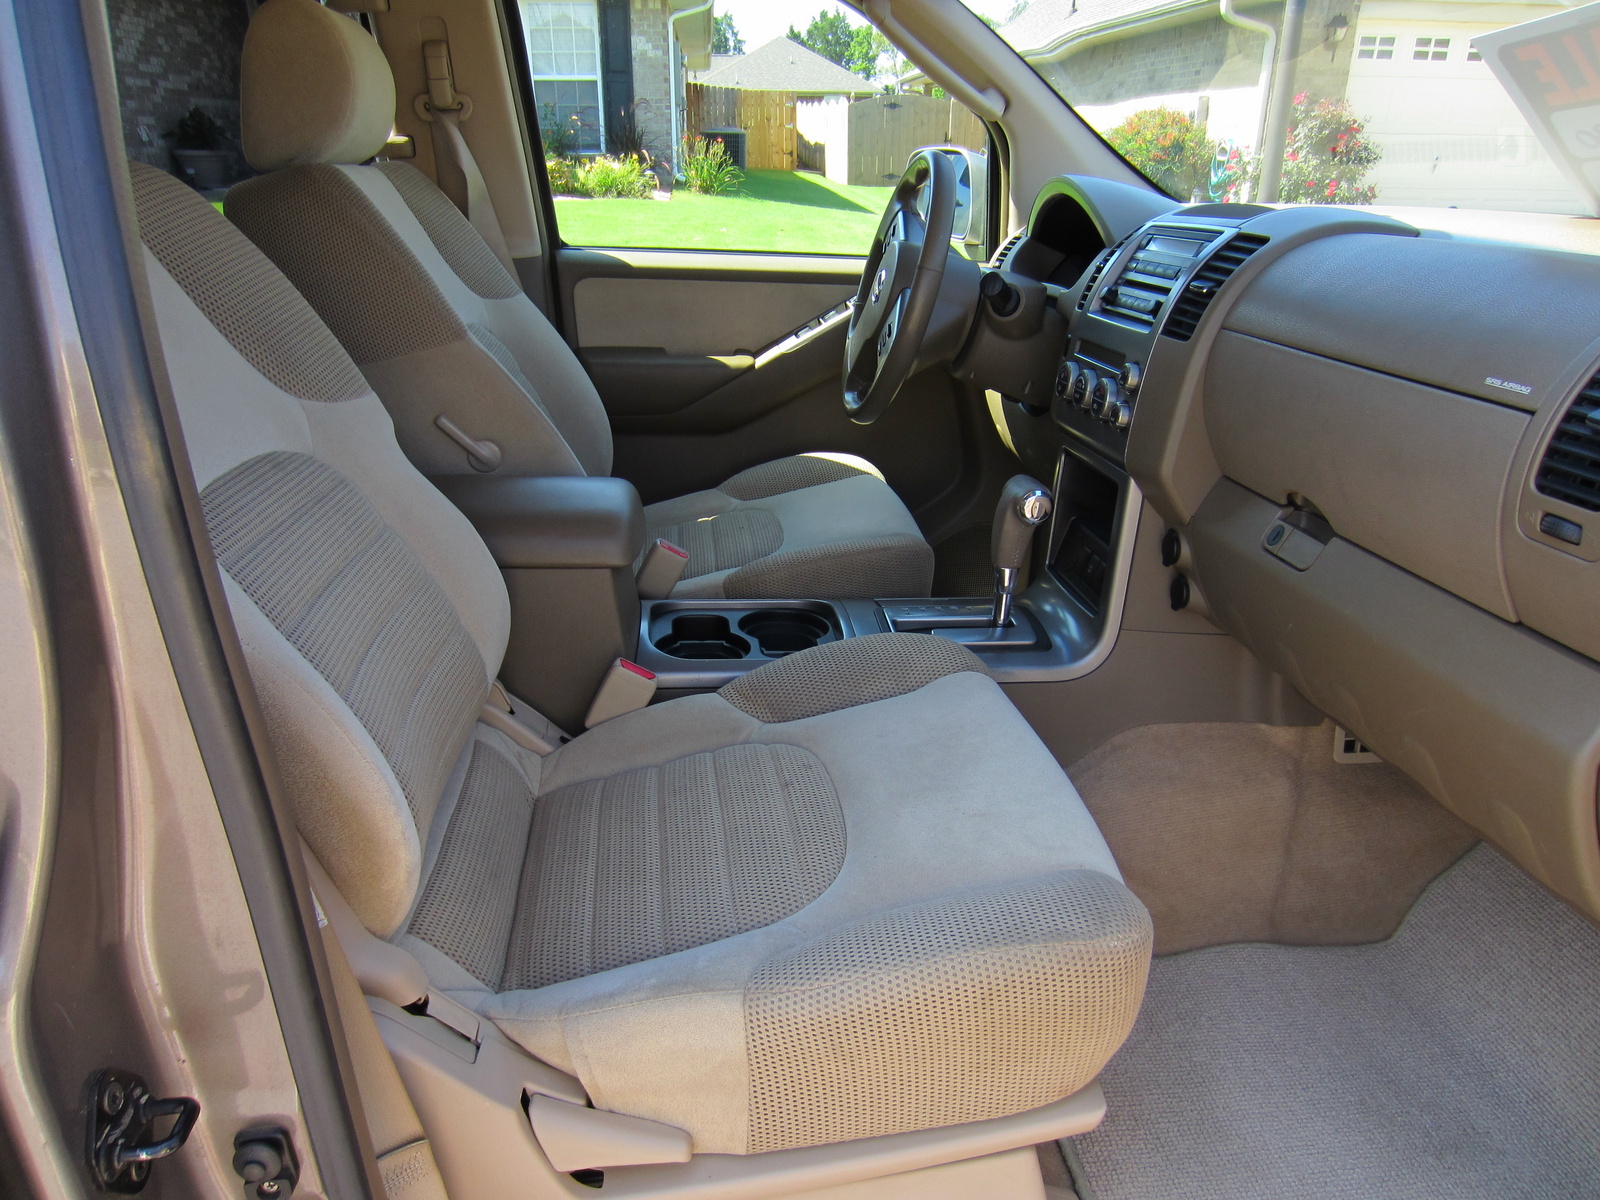 2005 Nissan pathfinder se interior #1